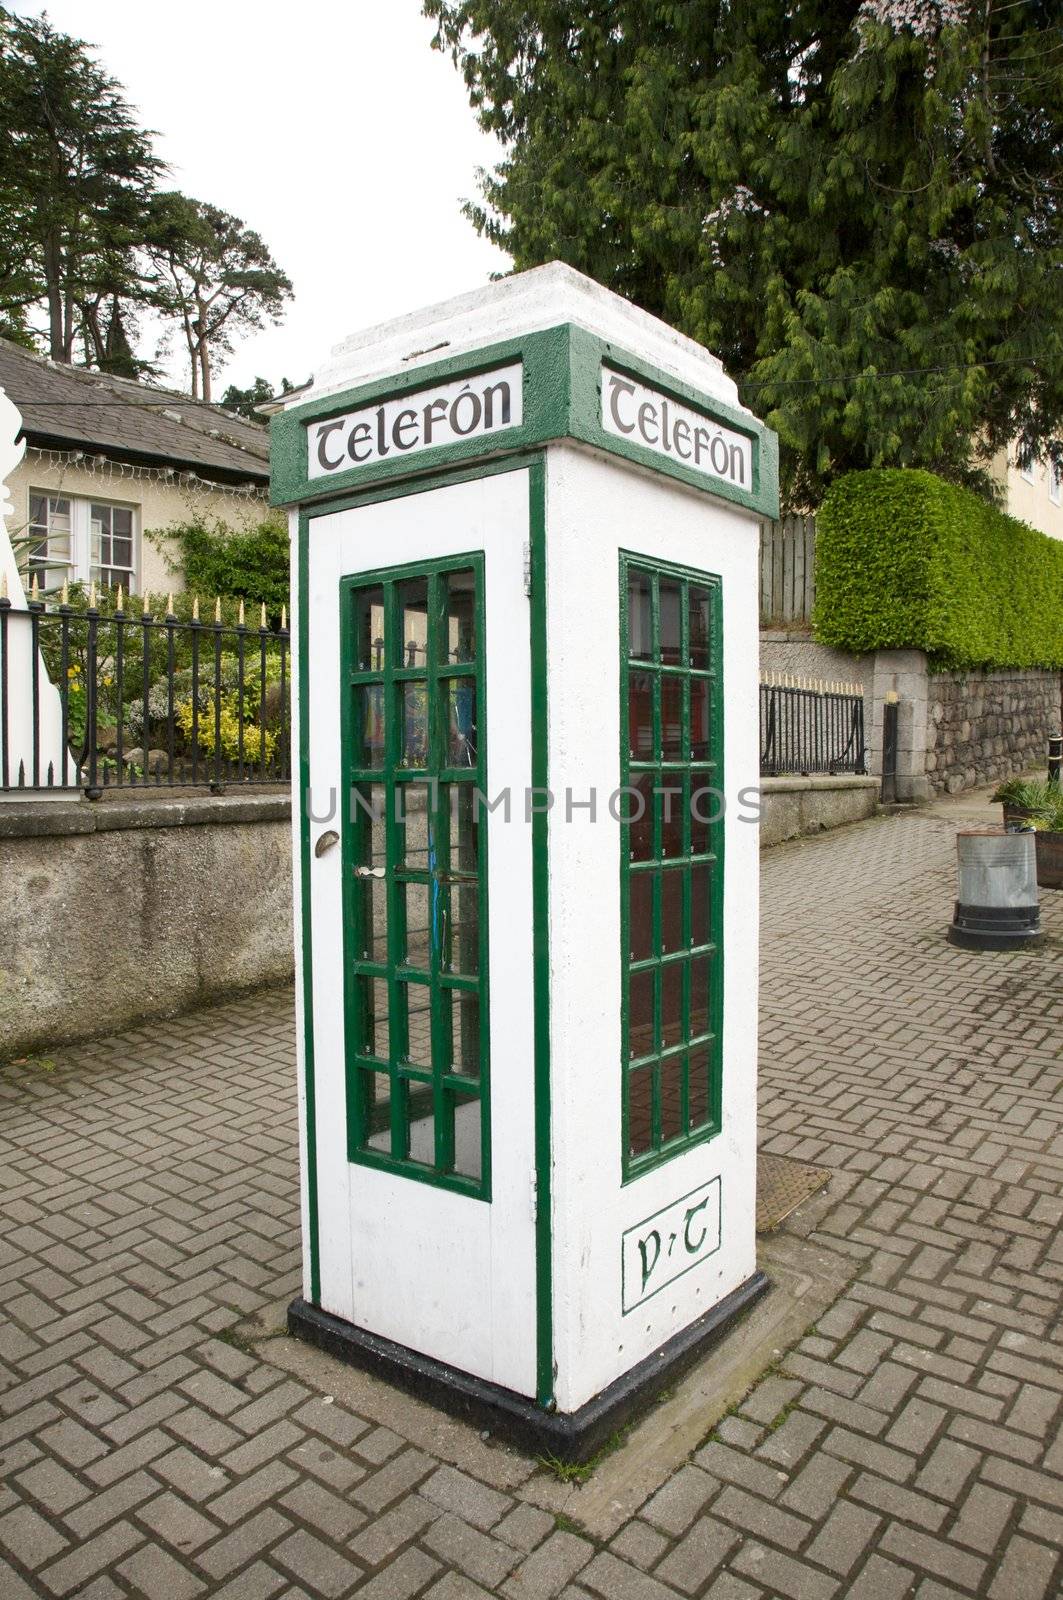 irish white and green phone box at the street